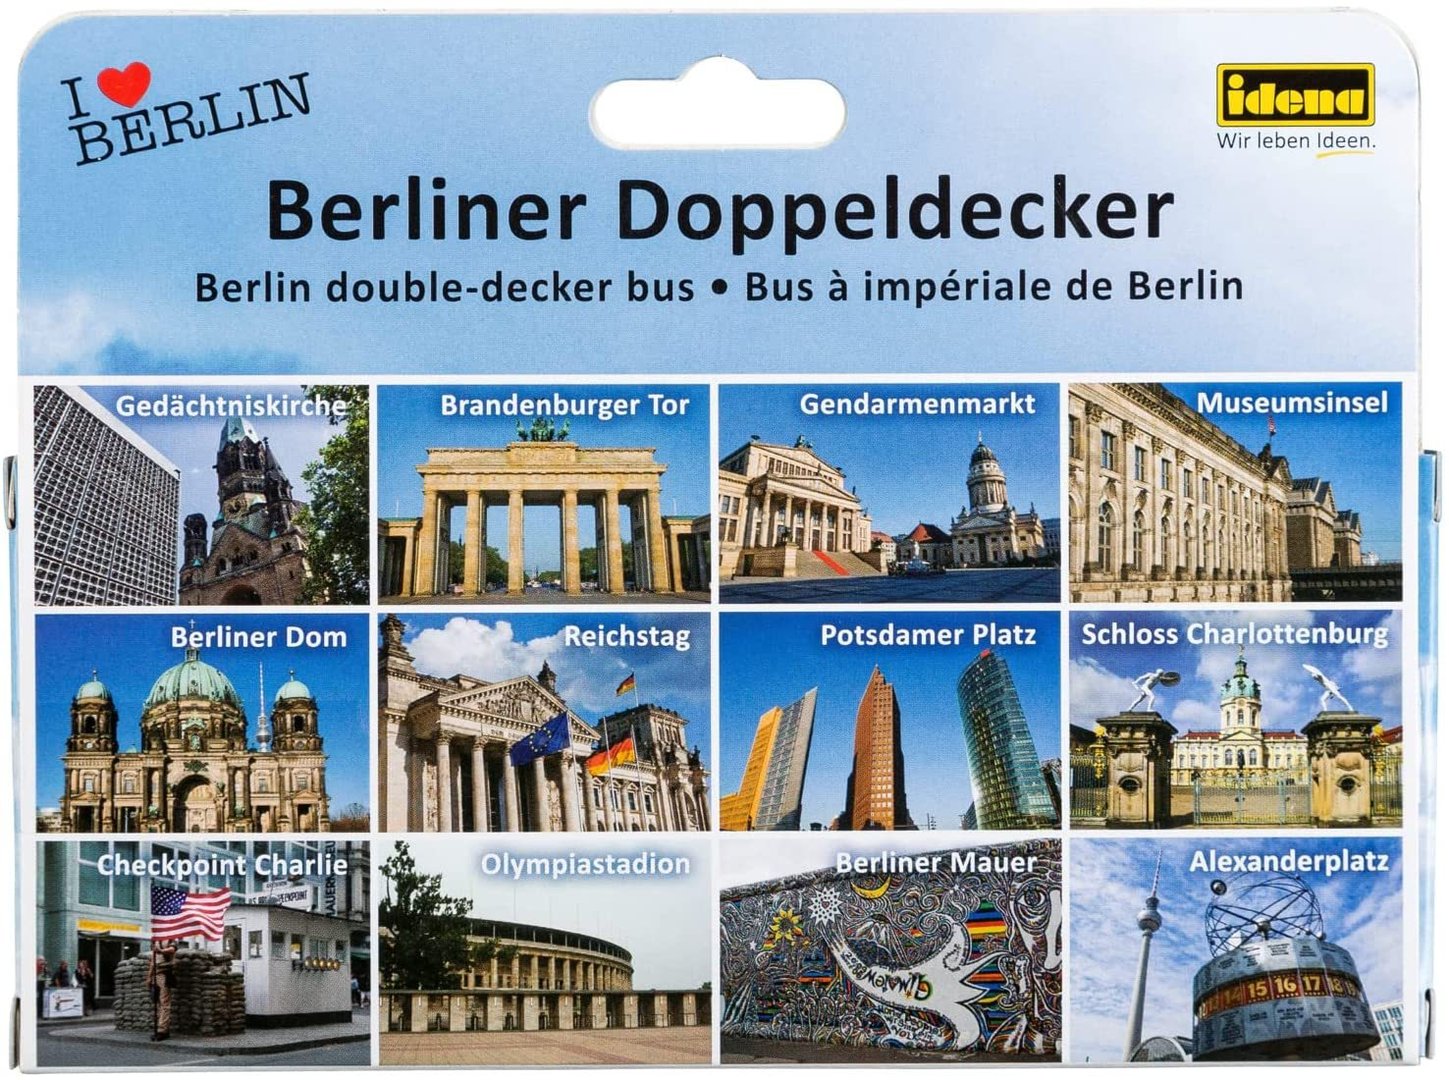 Berlin double decker bus toy model